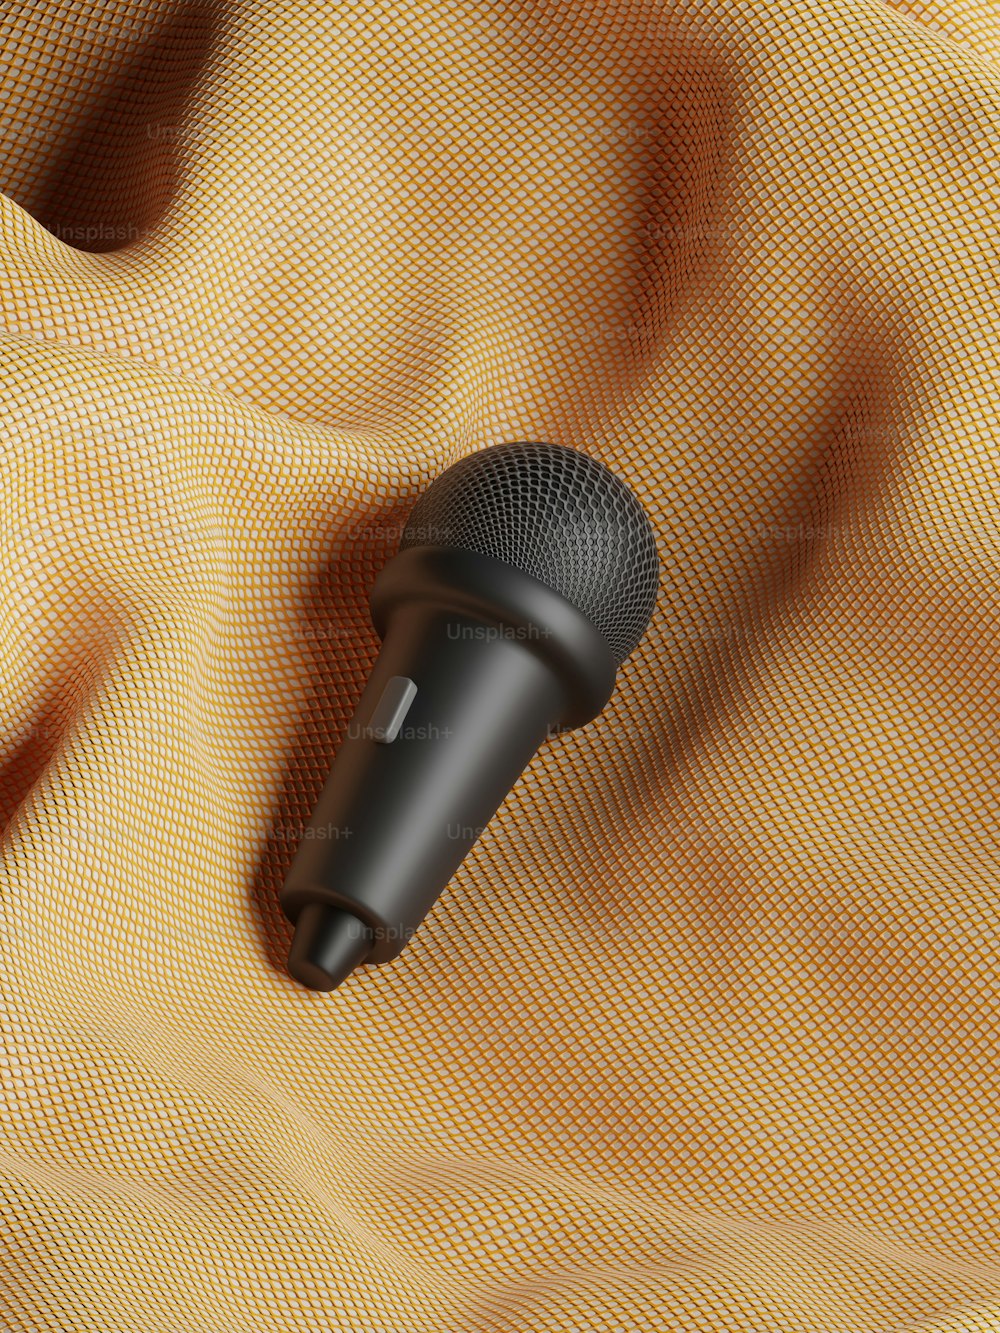 un microphone noir posé sur un tissu jaune